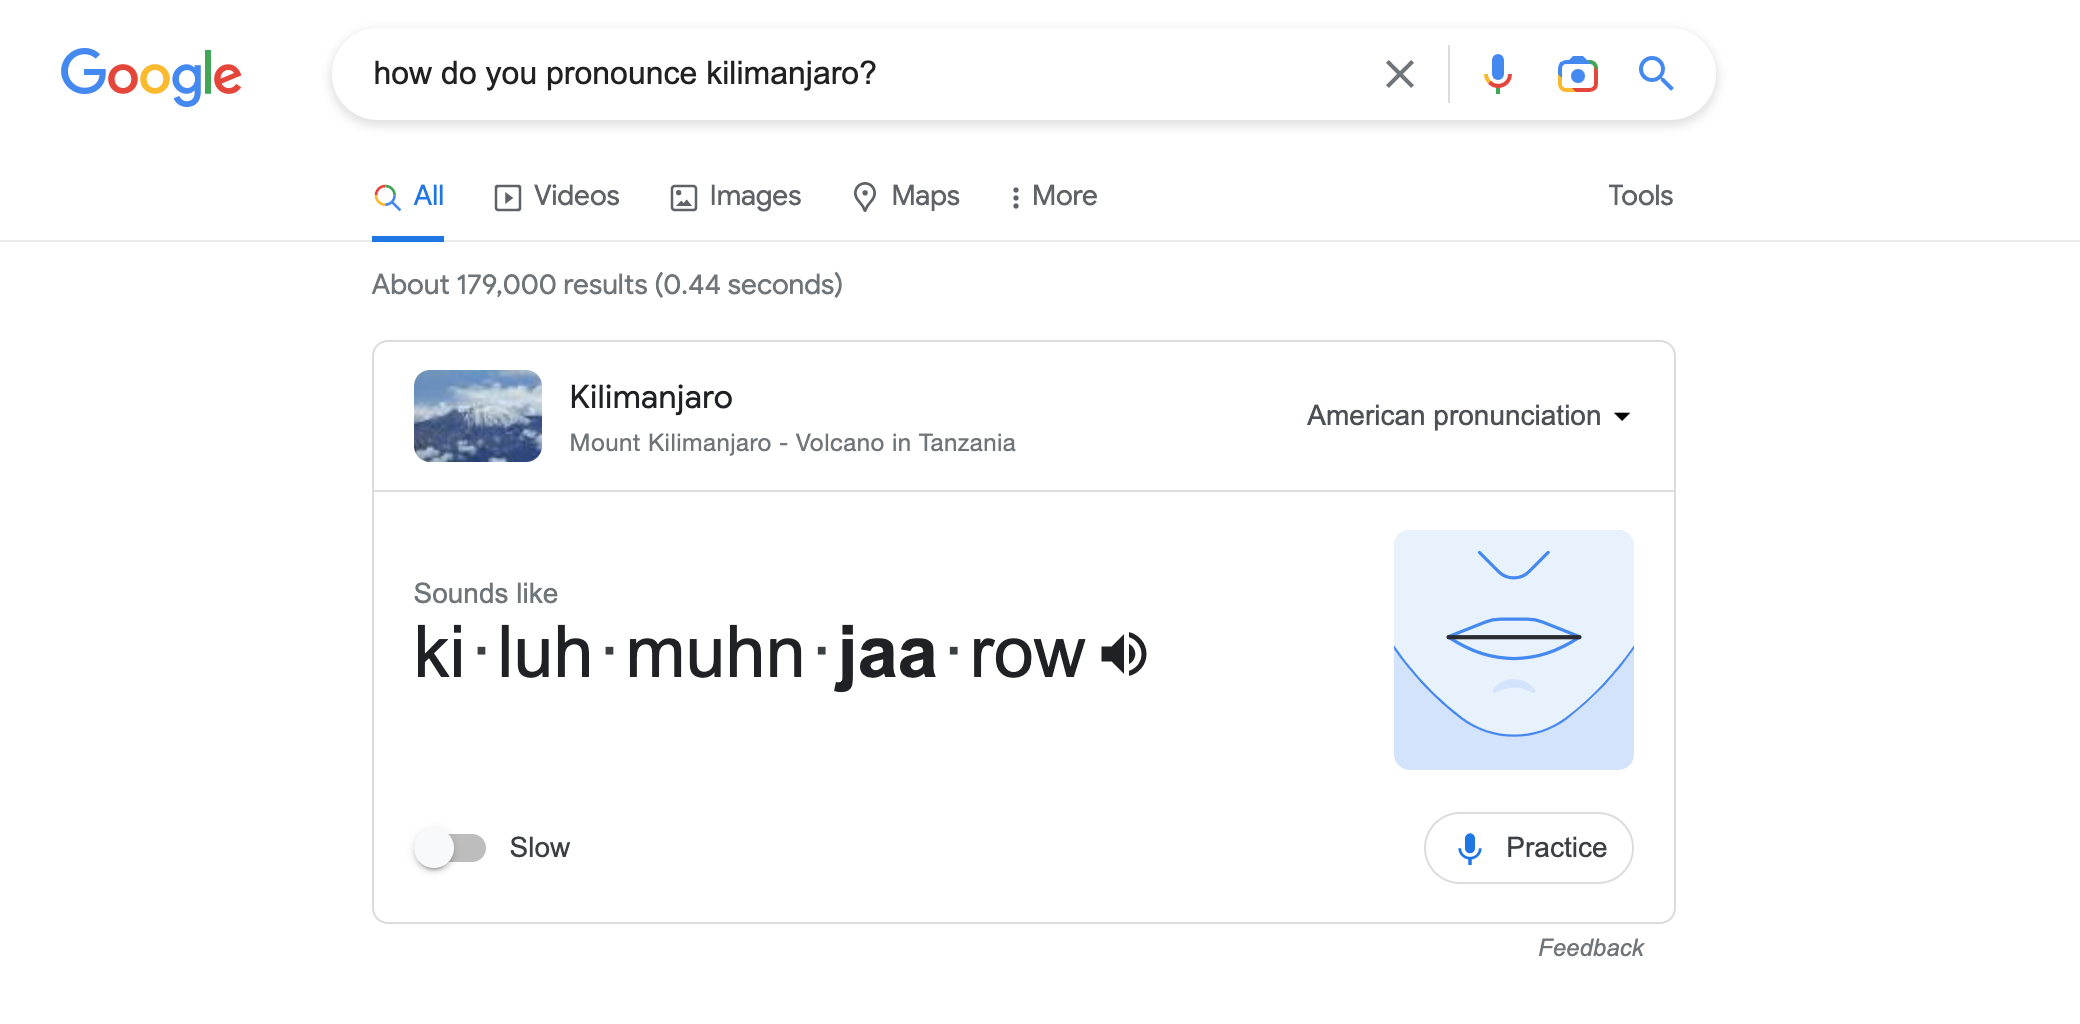 Pronouncing Kilimanjaro